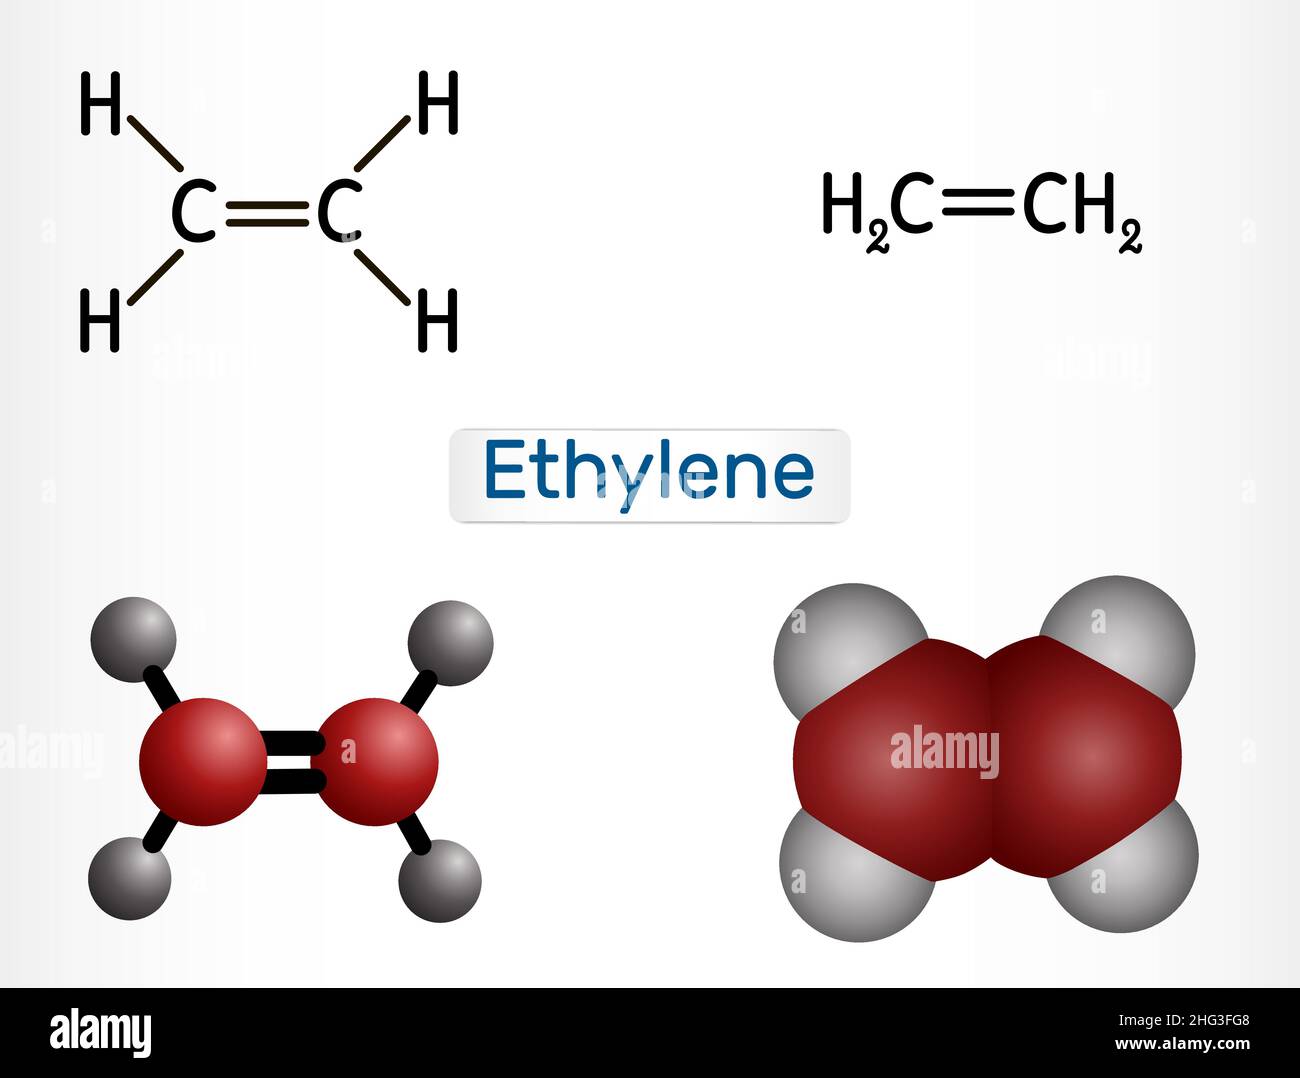 Ethylen, Ethan, C2H4-Molekül. Es ist organische Verbindung, Kohlenwasserstoff, Alken. Strukturelle chemische Formel und Molekülmodell. Vektorgrafik Stock Vektor